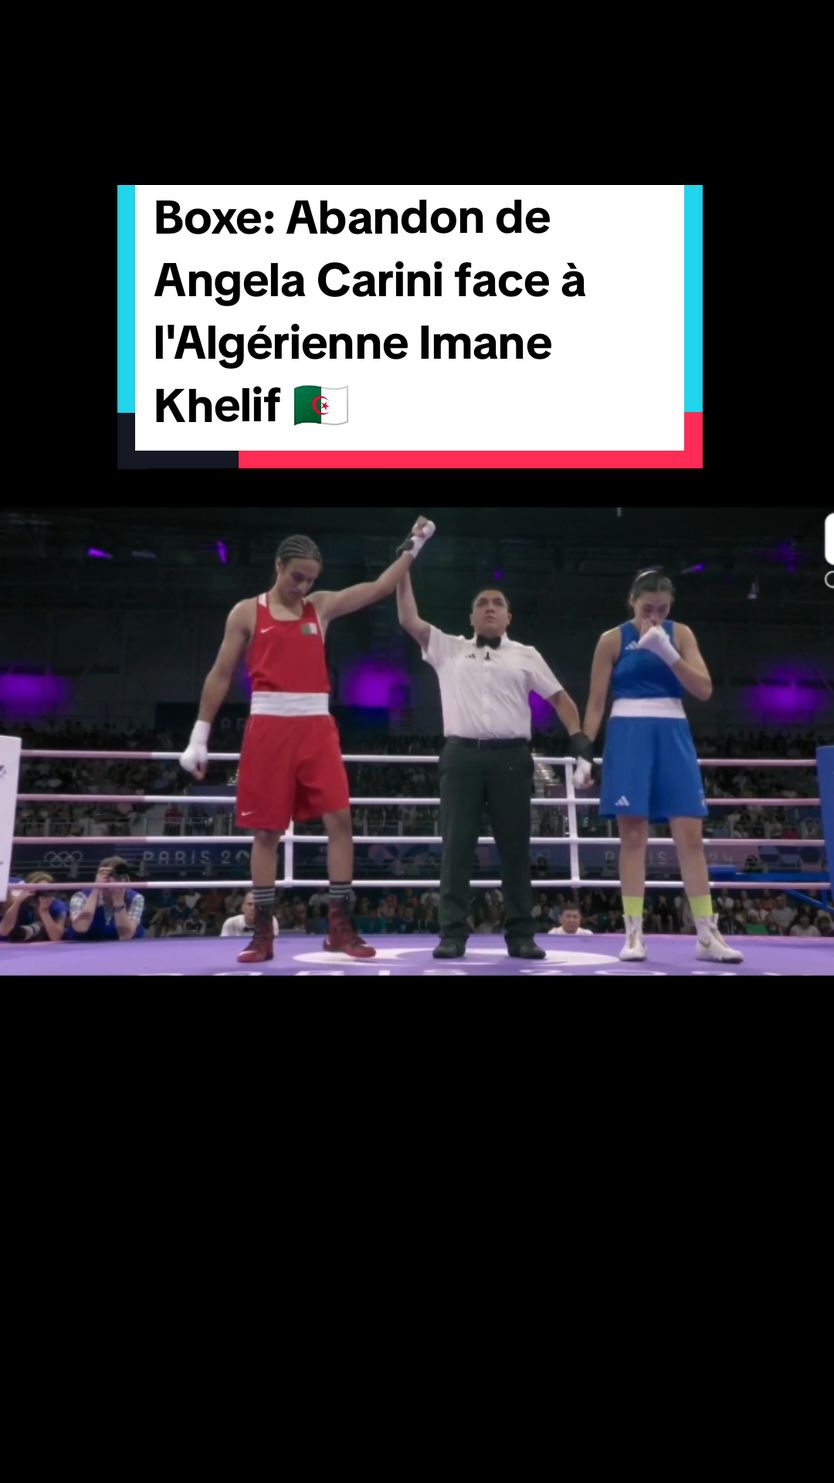 Réponse à @lm.hdjs L'algérienne Imane Khelif Grande gagnante du match de boxe face à Angela Carini l'italienne qui a abandonné. Olympics Paris 2024. Tahia Djazaïr #olympics #boxe #algerie #ticktockmondiale🌍 #tictokafrique🌍💪💪❤️‍ #france🇫🇷 #tiktokgabon🇬🇦💯🇬🇦👌😍❤️ #france🇫🇷_belgique🇧🇪_espange🇪🇸_suisse🇨🇭_ #cotedivoire🇨🇮 #caribbeantiktokeurs🇭🇹🇬🇾🇹🇹🇸🇷🇯🇲🇱🇨🇻🇨🇬🇾🇬🇩 #camerountiktok🇨🇲 #congolaise🇨🇩 #tahiadjazair #dzair #alger #algerie #algerienne #algerienne🇩🇿 #algeria #algerie🇩🇿 #dz #dzpower #imanekhelif #angelacarini #paris2024 